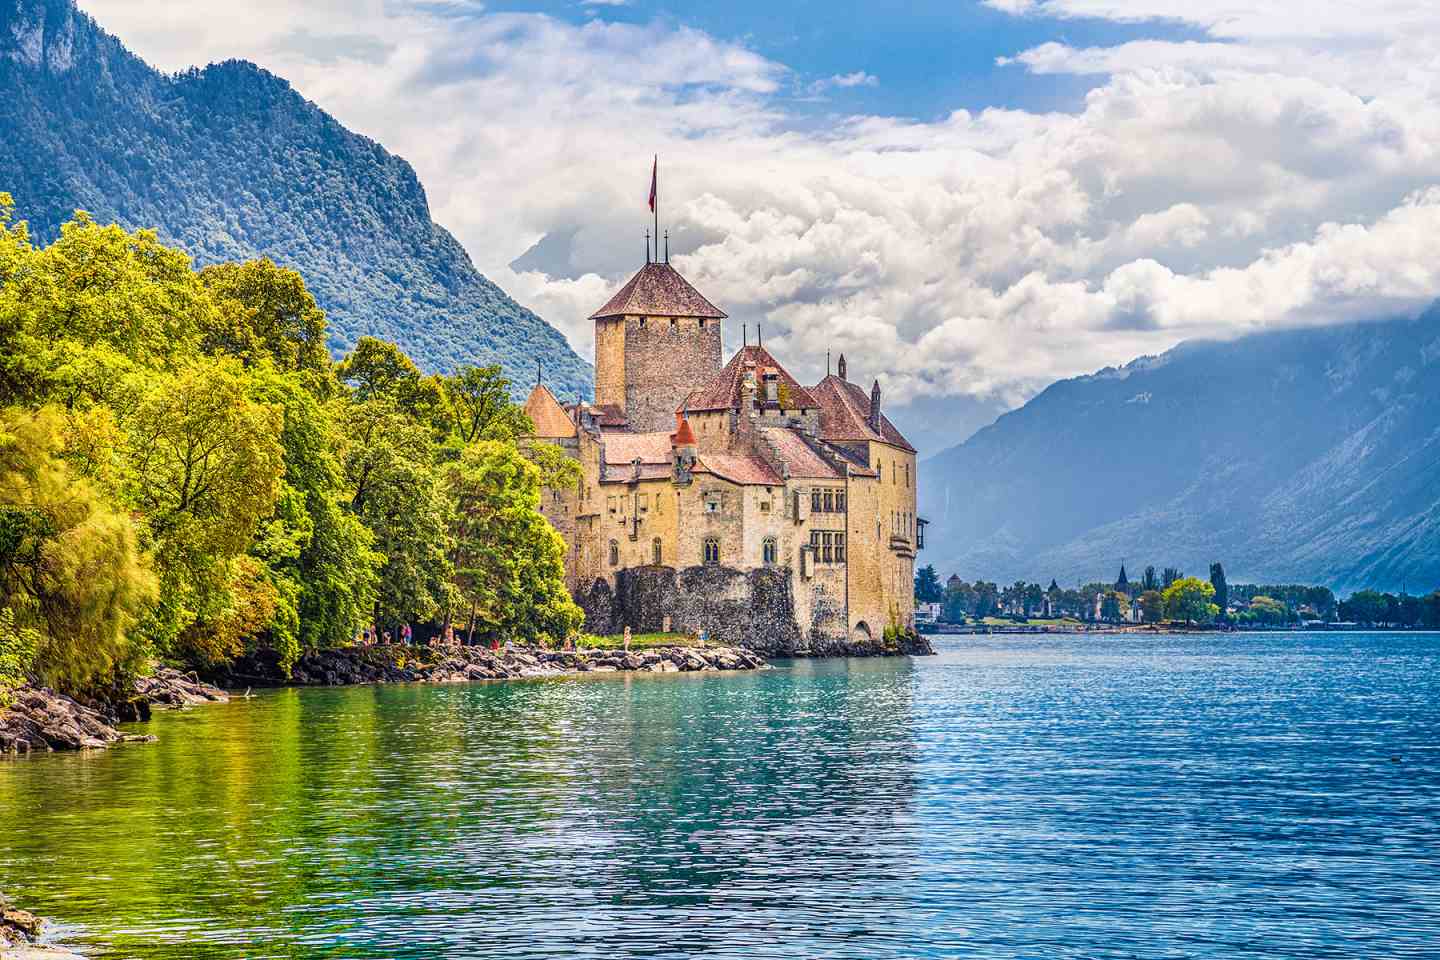  عکس کشور سوئیس